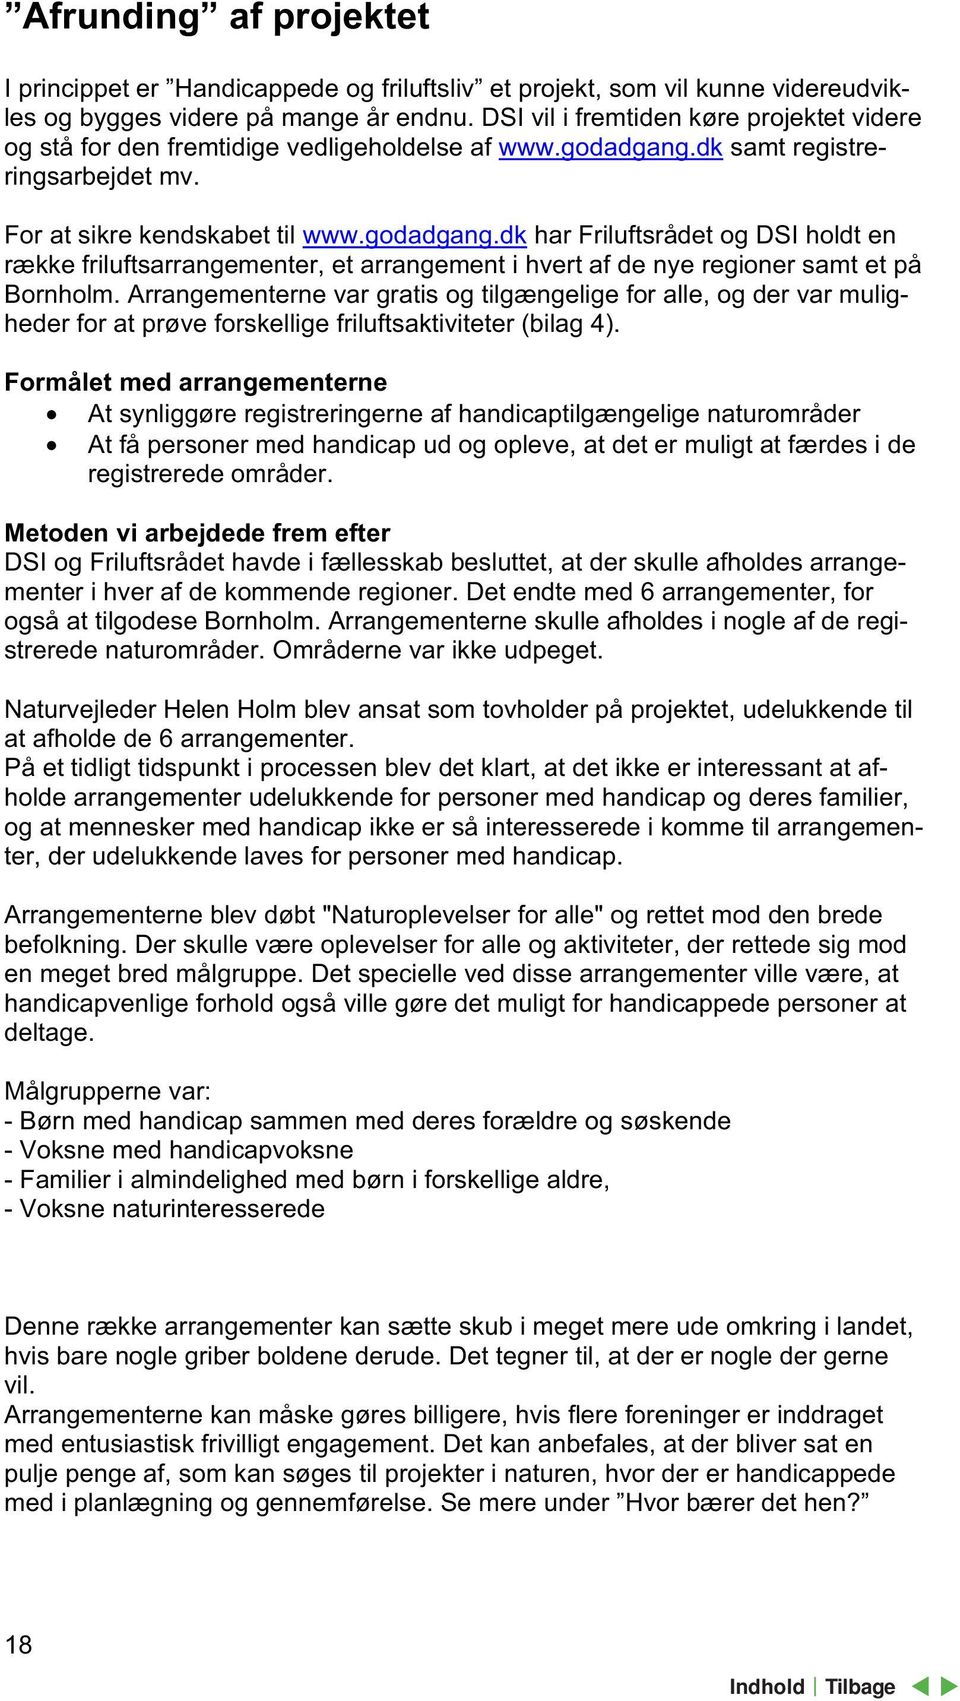 dk samt registreringsarbejdet mv. For at sikre kendskabet til www.godadgang.